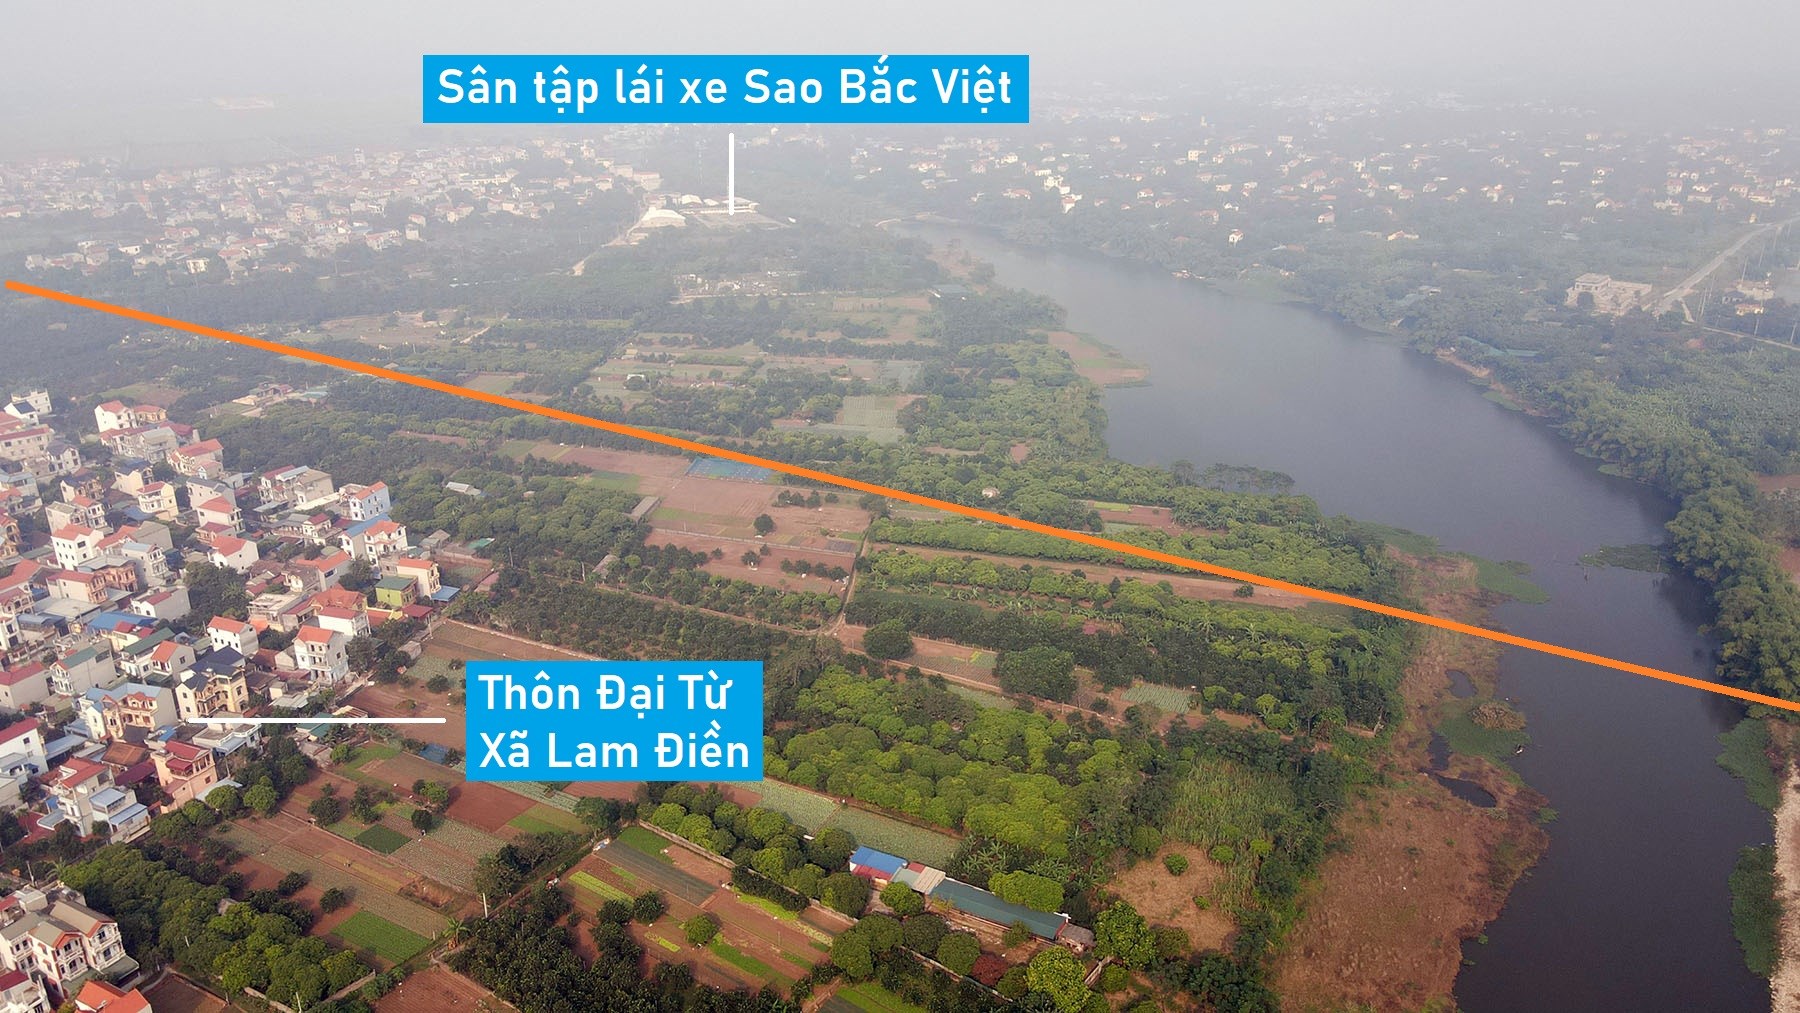 Toàn cảnh vị trí quy hoạch cầu vượt sông Đáy nối huyện Chương Mỹ - Thanh Oai, Hà Nội